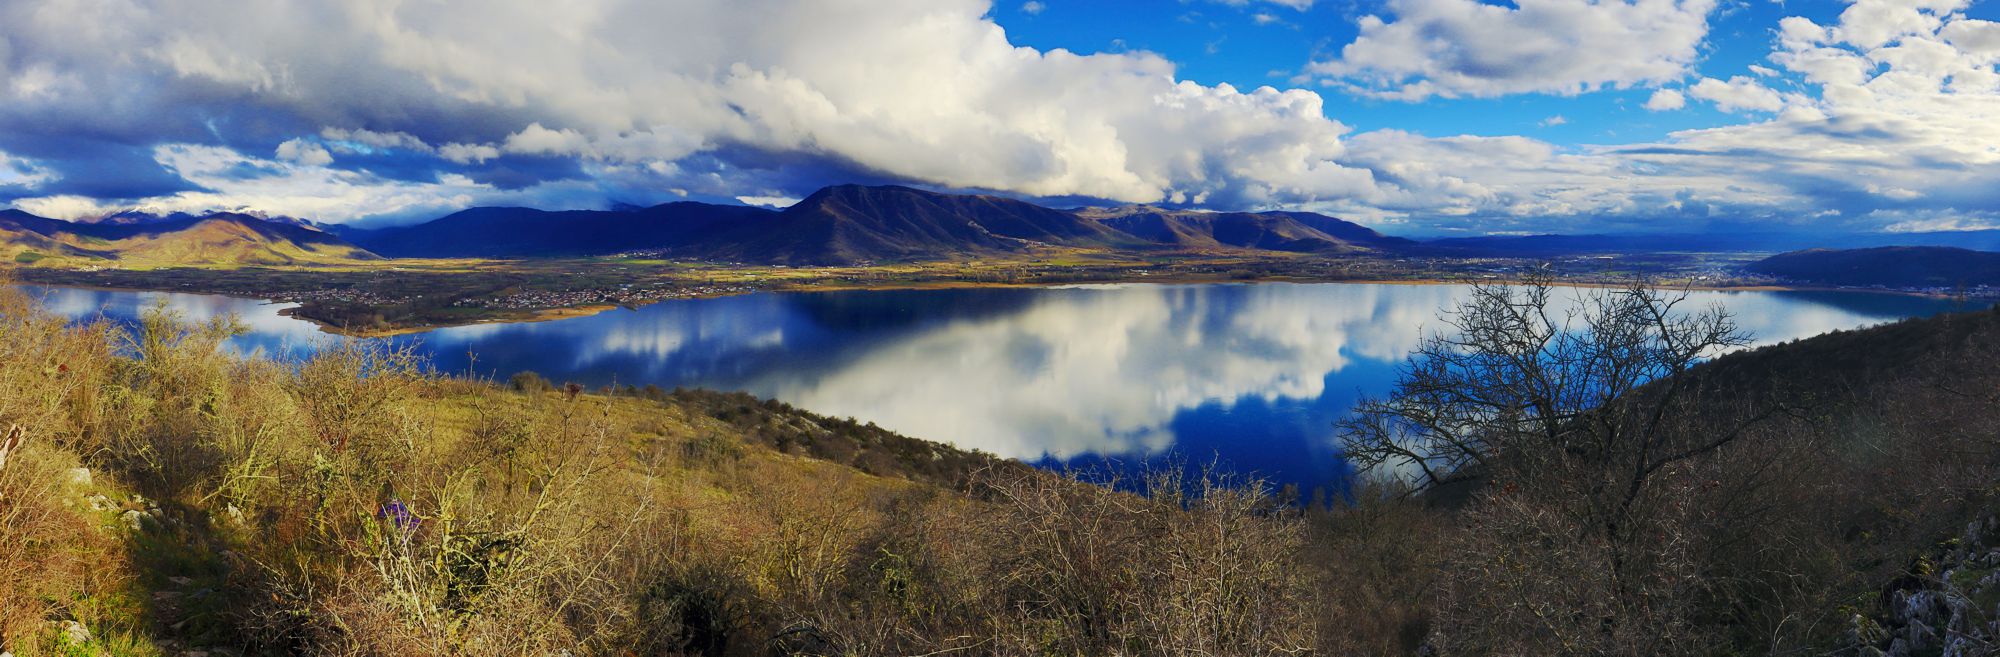 Φυσική γεωγραφία της Καστοριάς: η λίμνη Ορεστιάς από τη ψηλότερο σημείο της χερσονήσου Κορίτσα